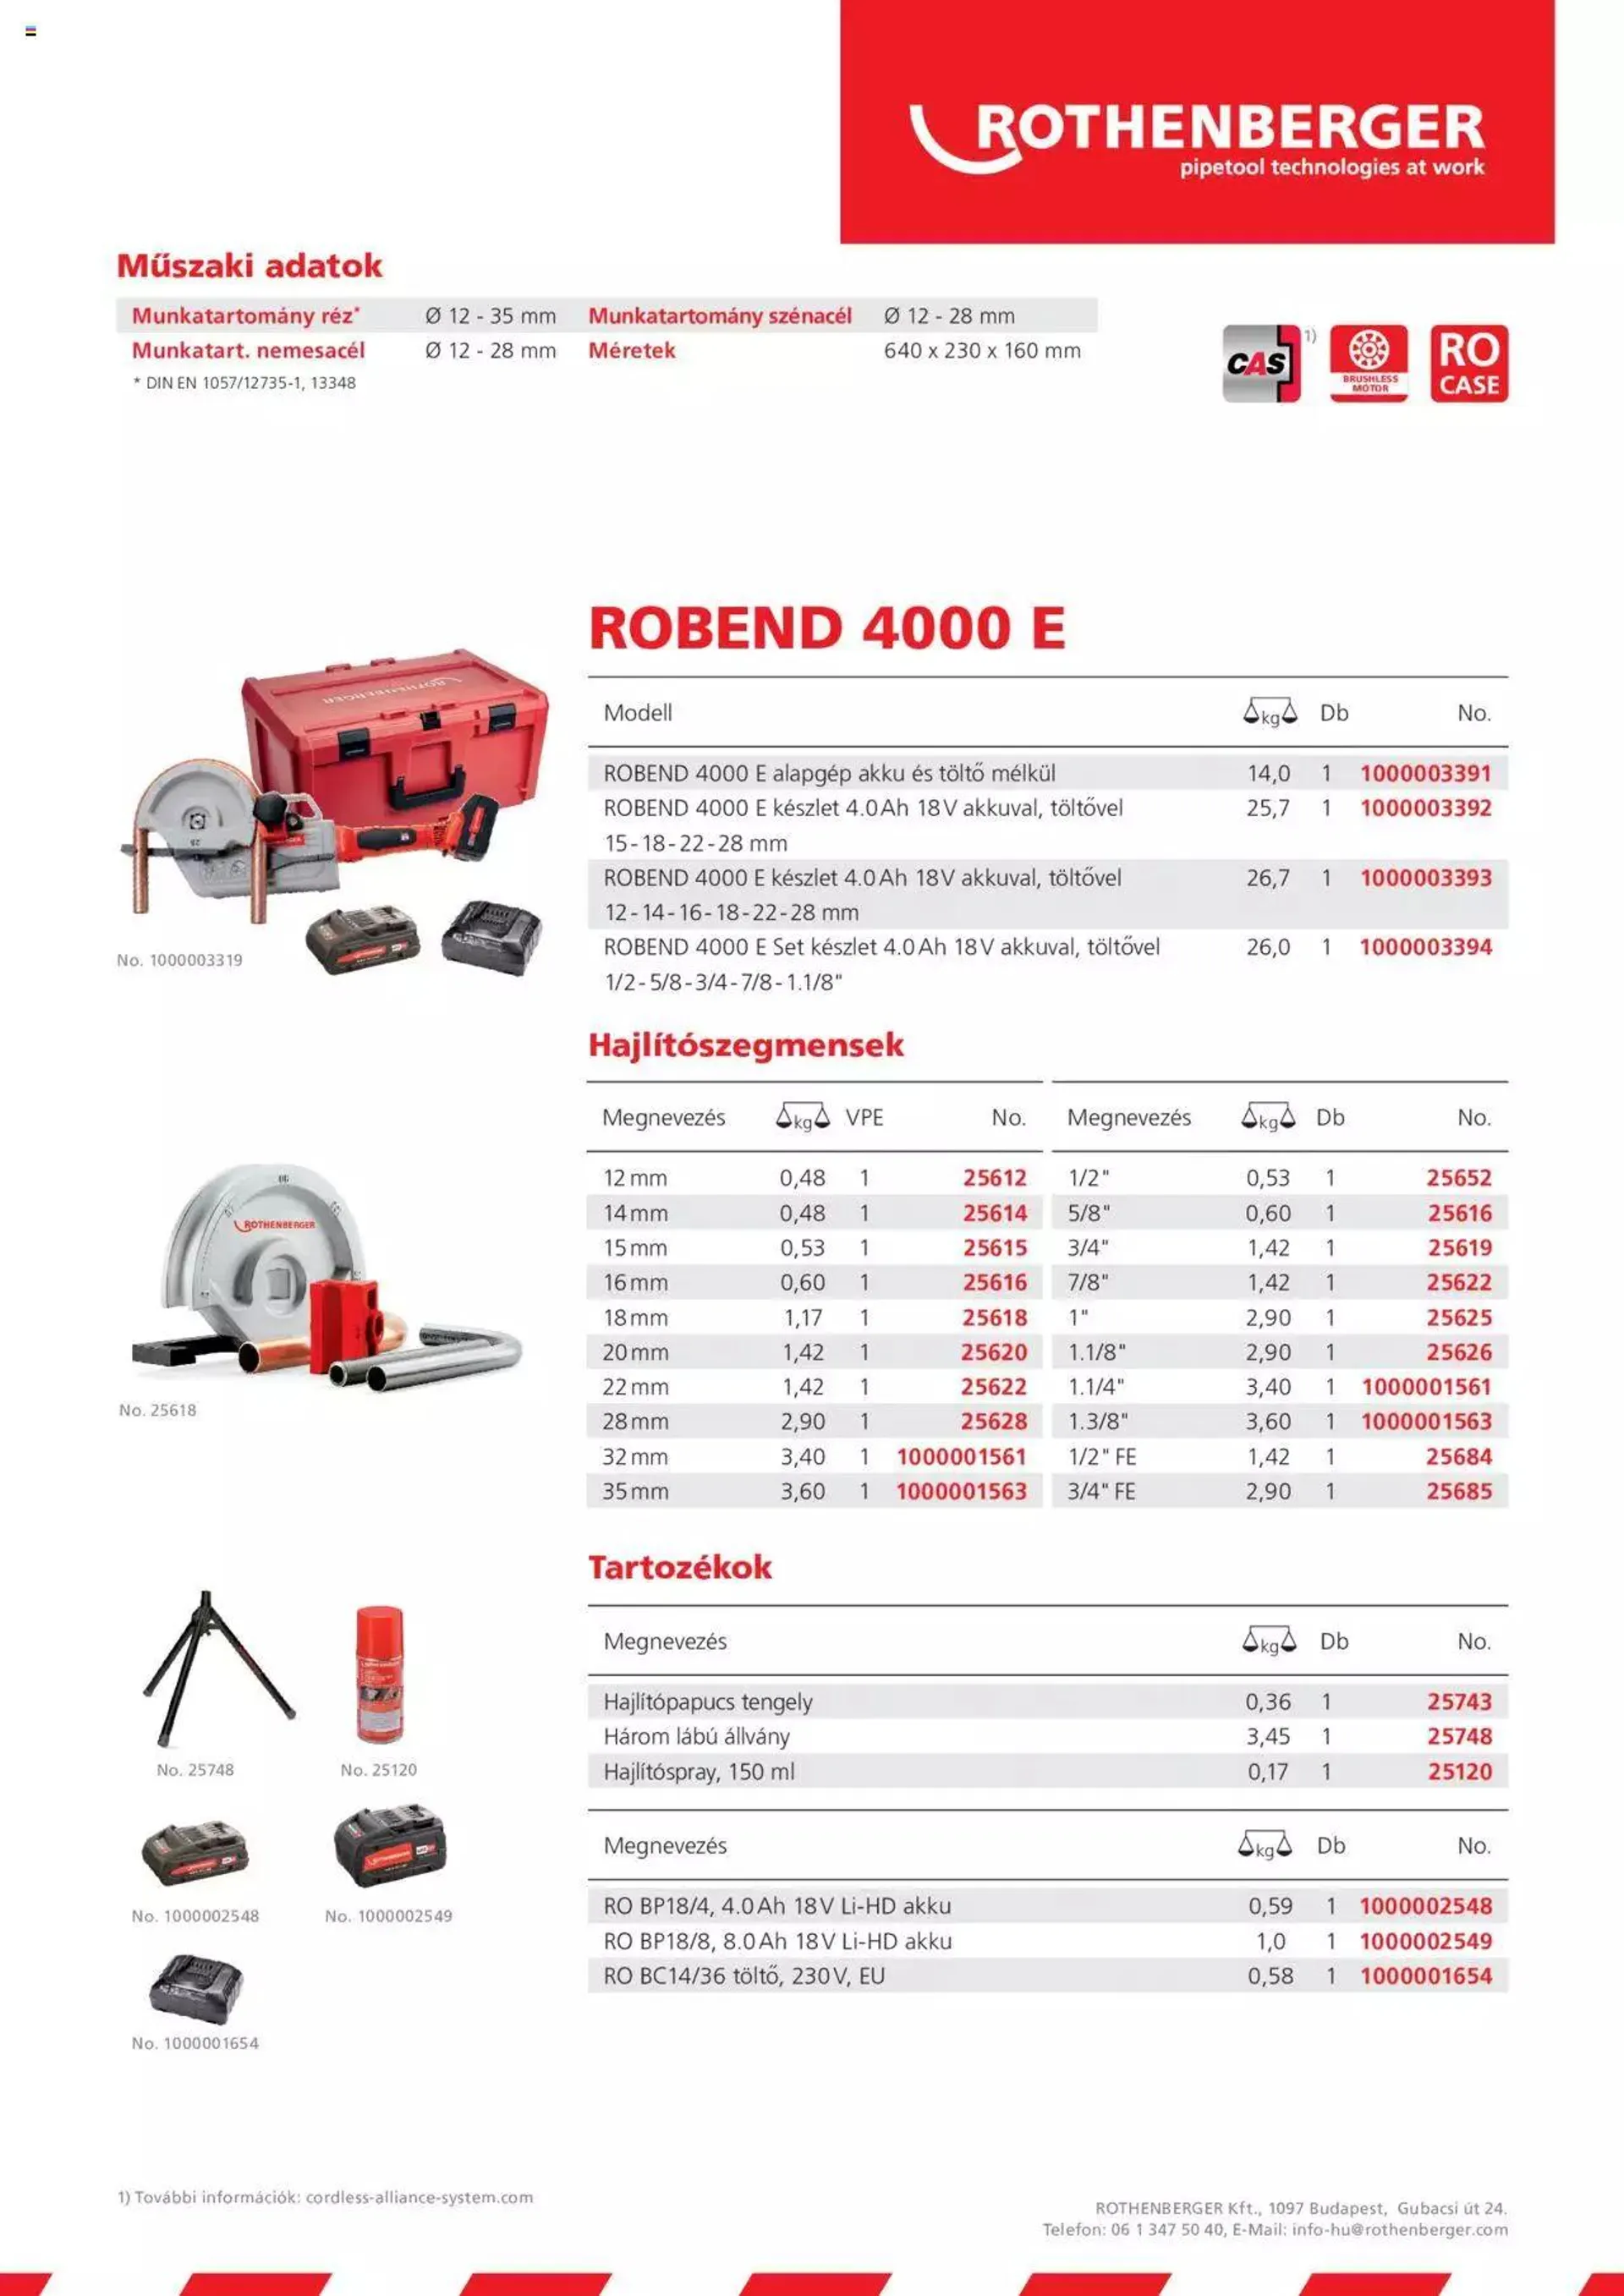 Rothenberger - Robend 4000 E - 1